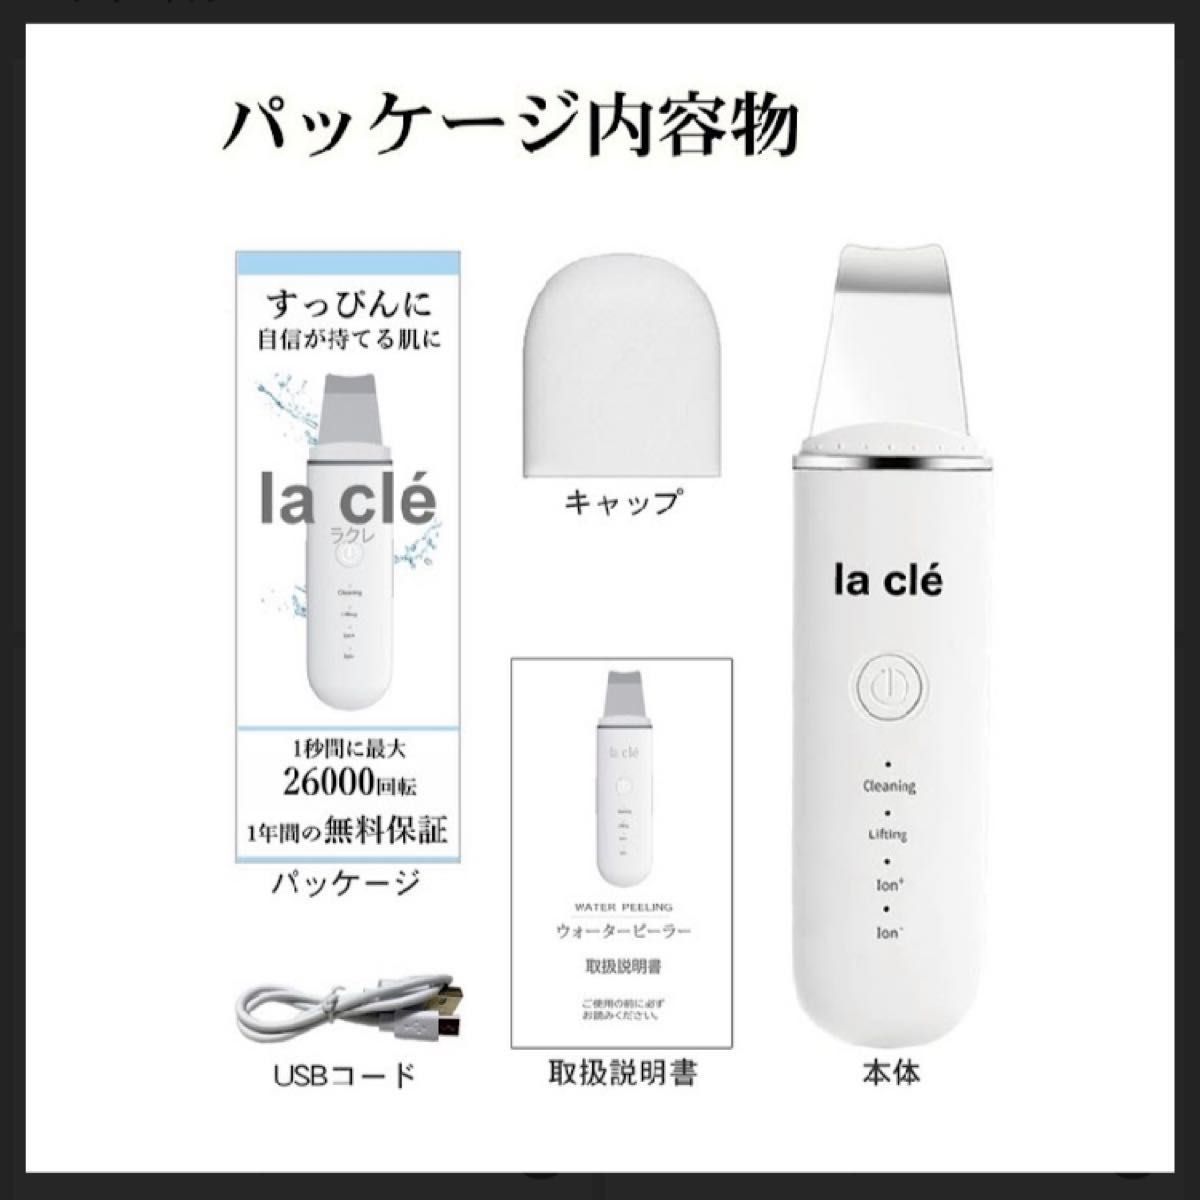 la cle日本ブランド ウォーターピーリング 超音波振動 防水 USB充電式